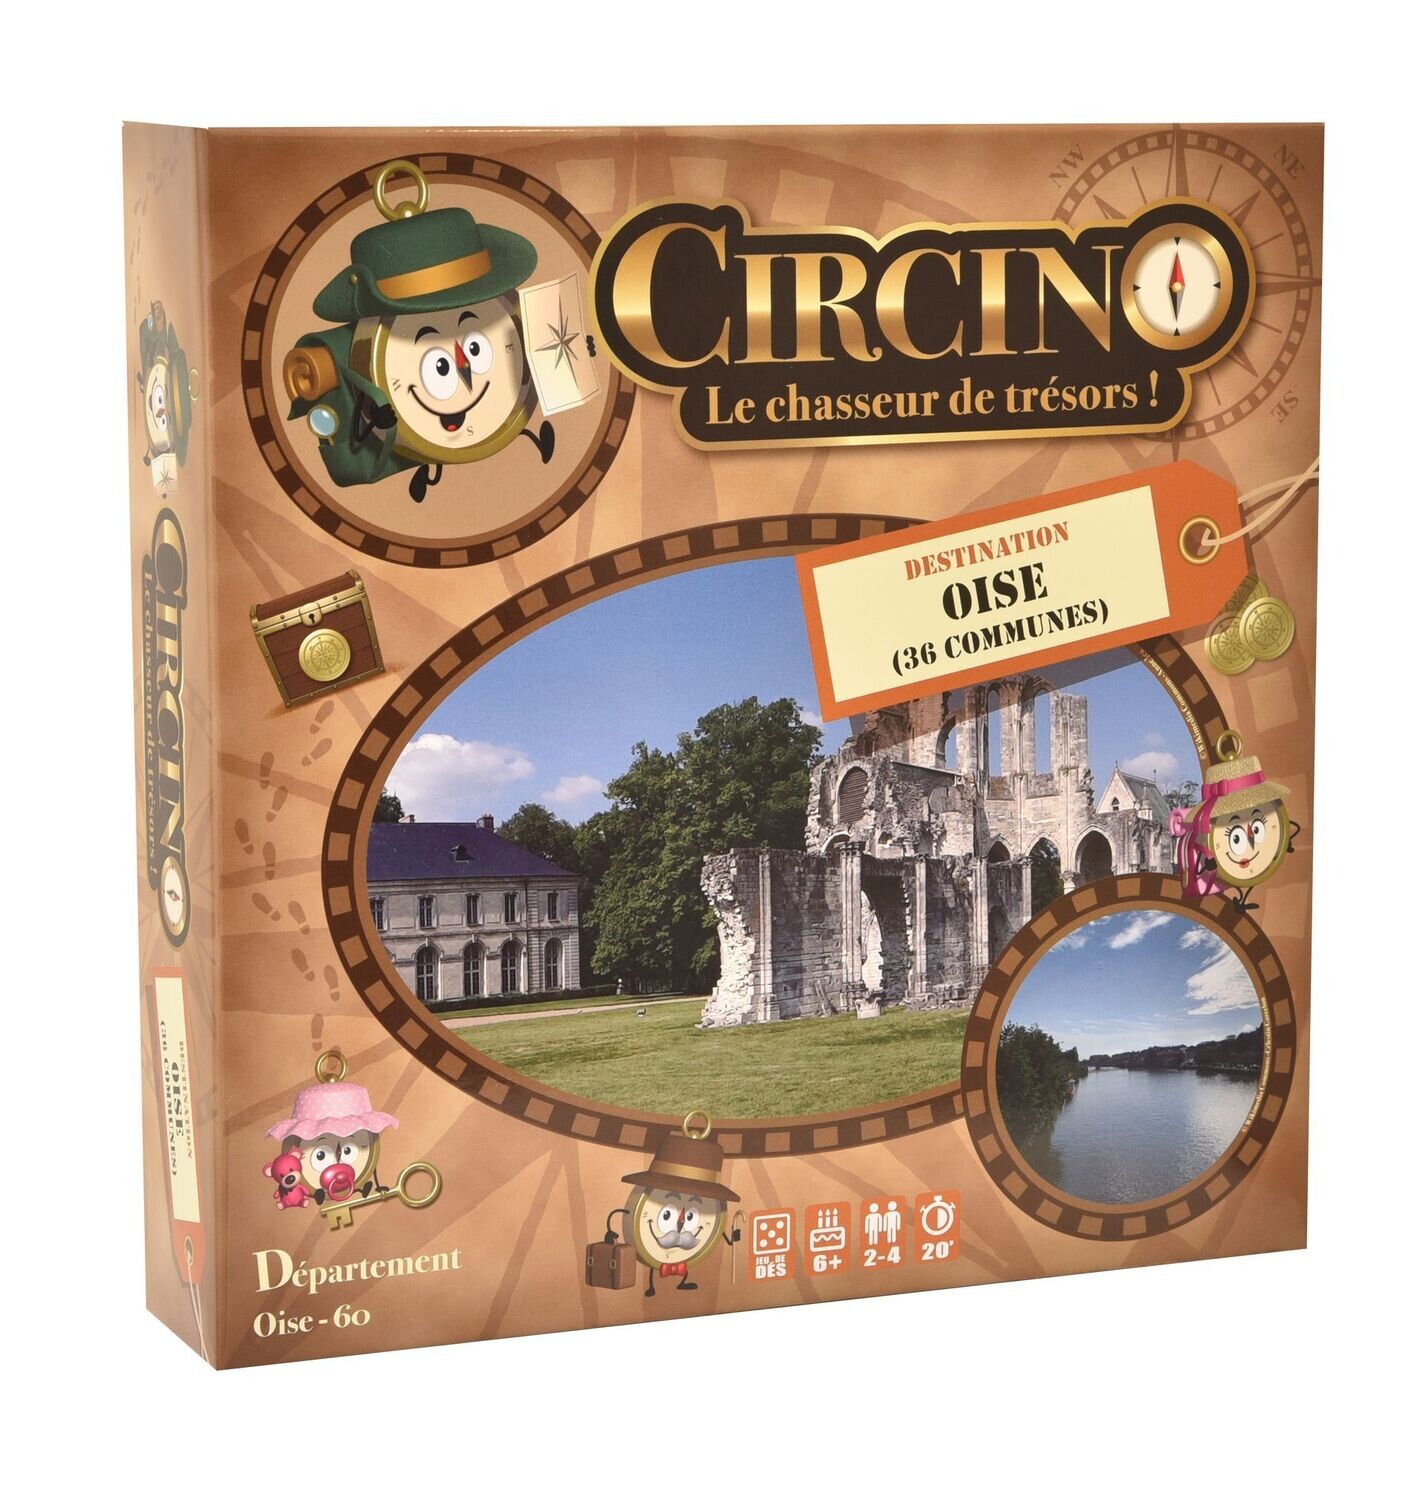 Circino, le Chasseur de Trésors - Destination Oise